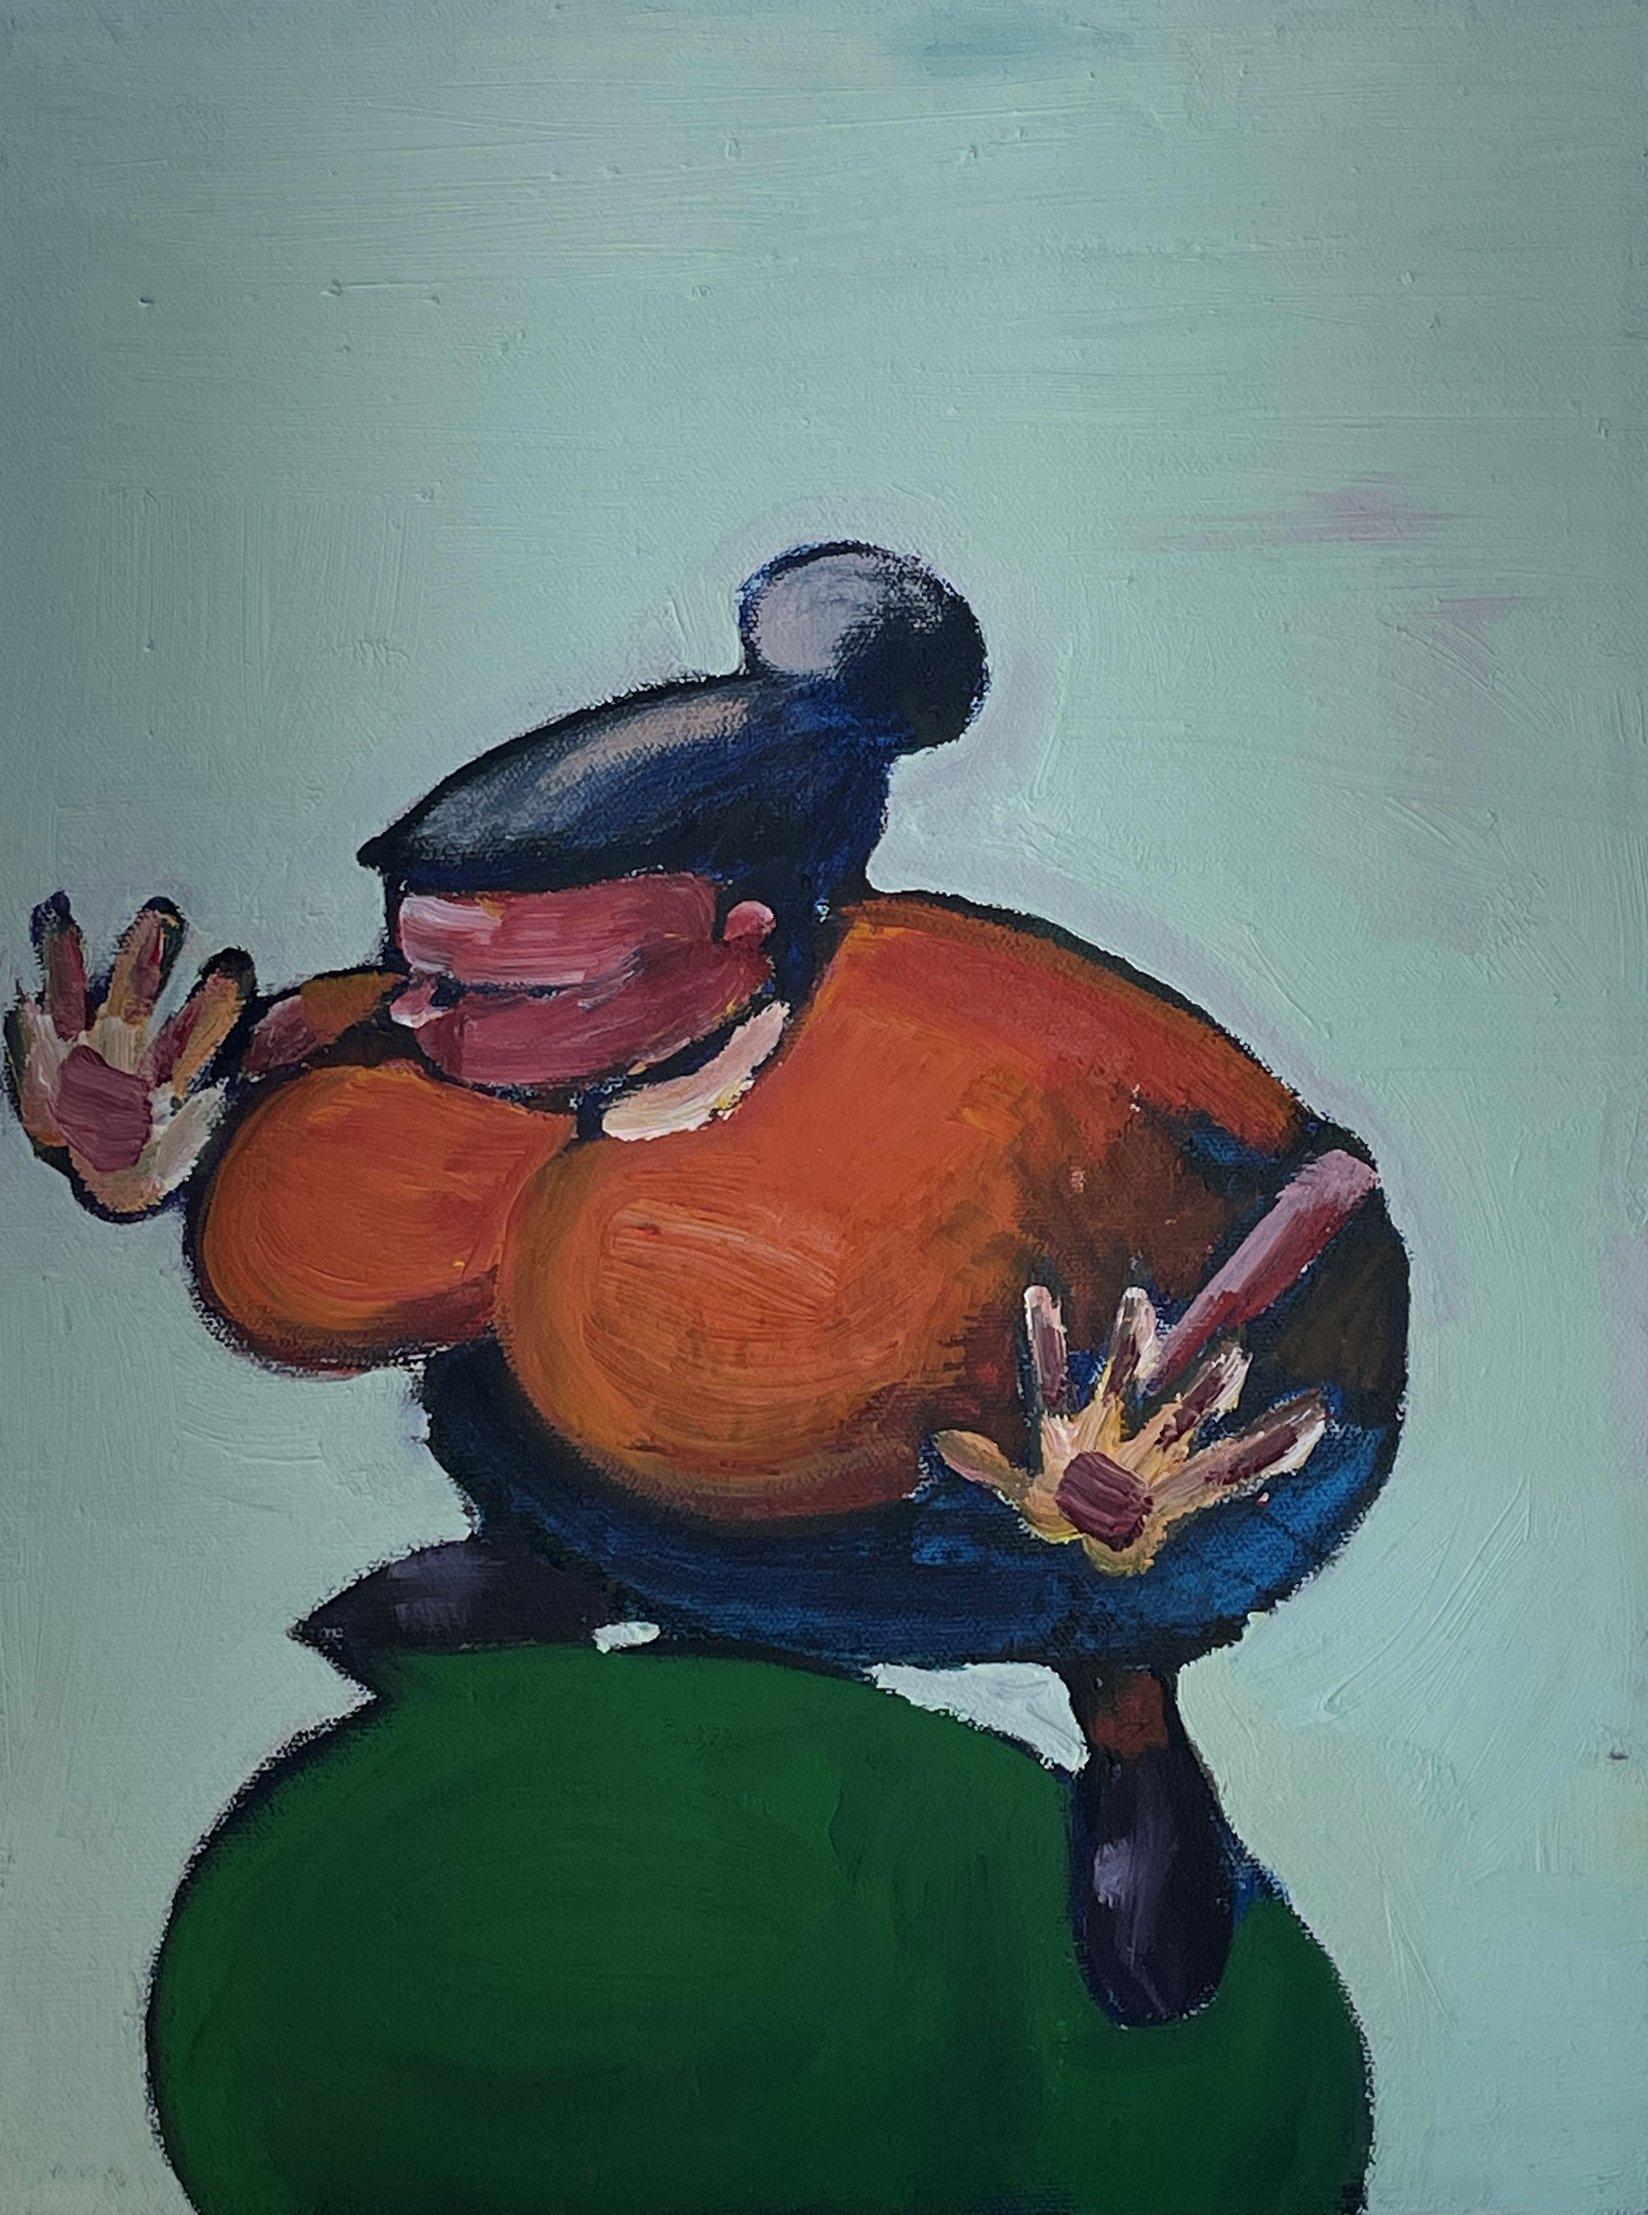 Sebastian Gross-Ossa (Américain, né en 1966)
Sans titre, 2000
Huile sur toile
14 1/8 x 11 pouces (35 x 28 cm)
Signé et daté au verso